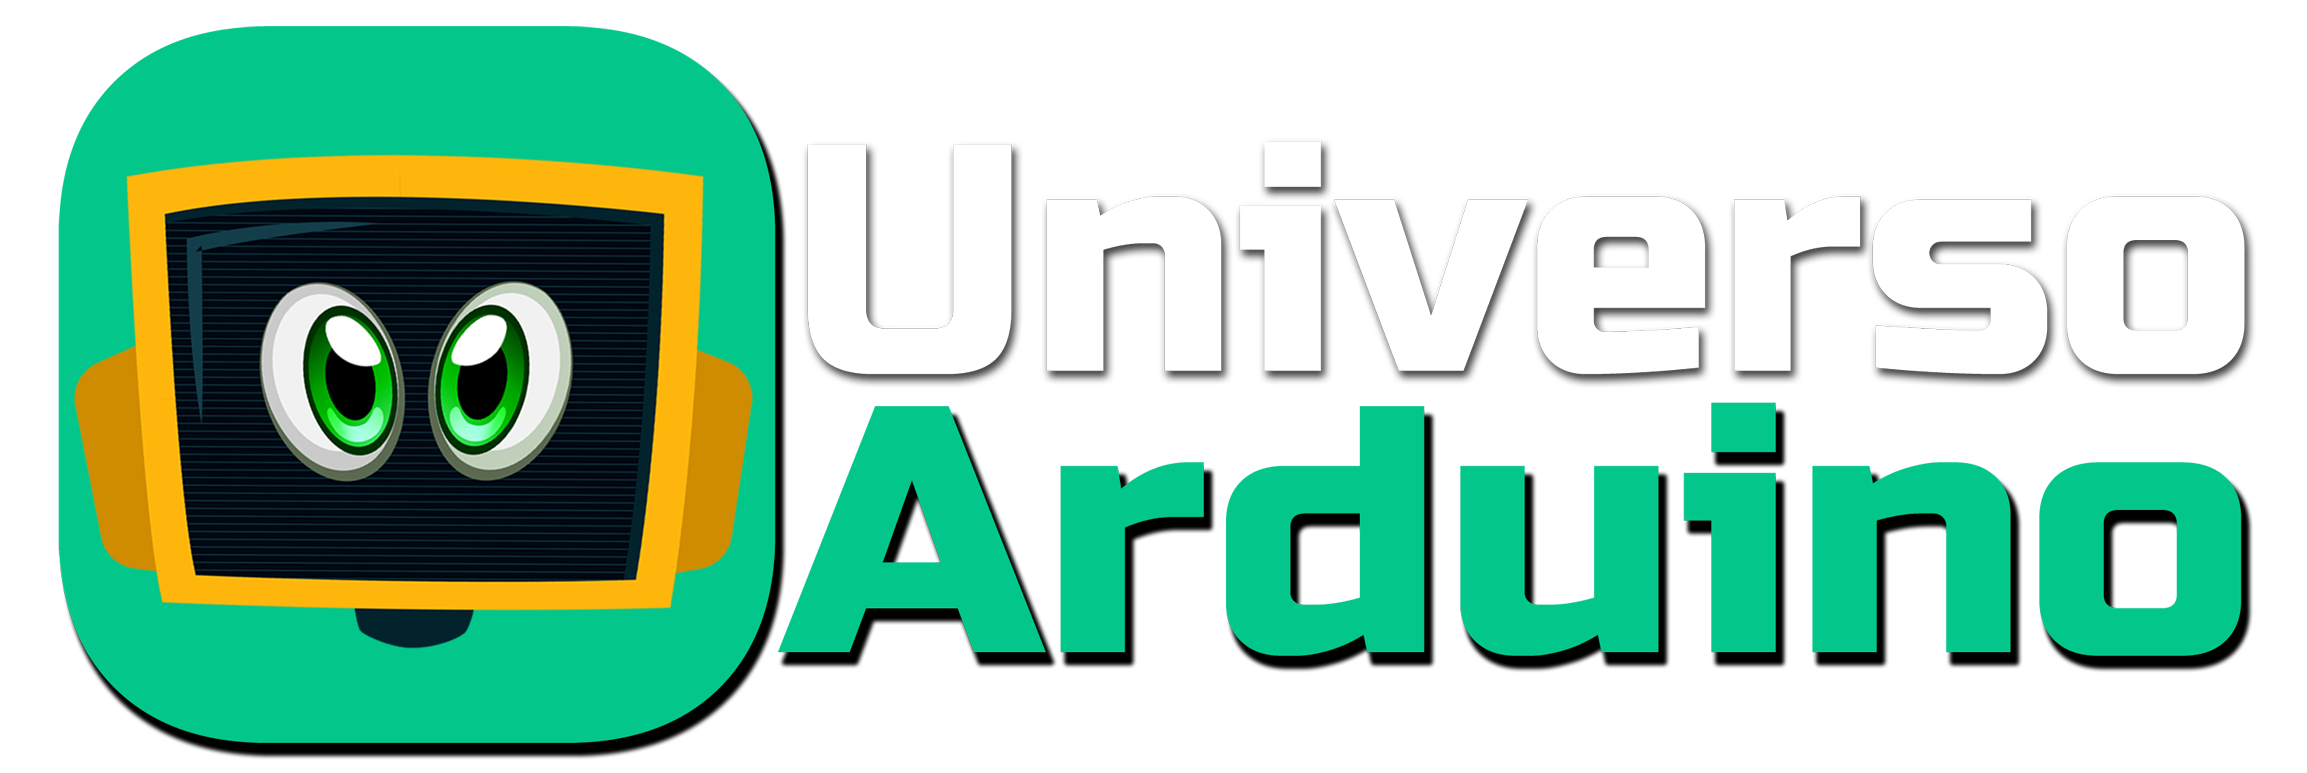 Logotipo do Universo Arduino, representado por um ícone estilizado. O ícone possui formas geométricas e simboliza a identidade visual da marca.